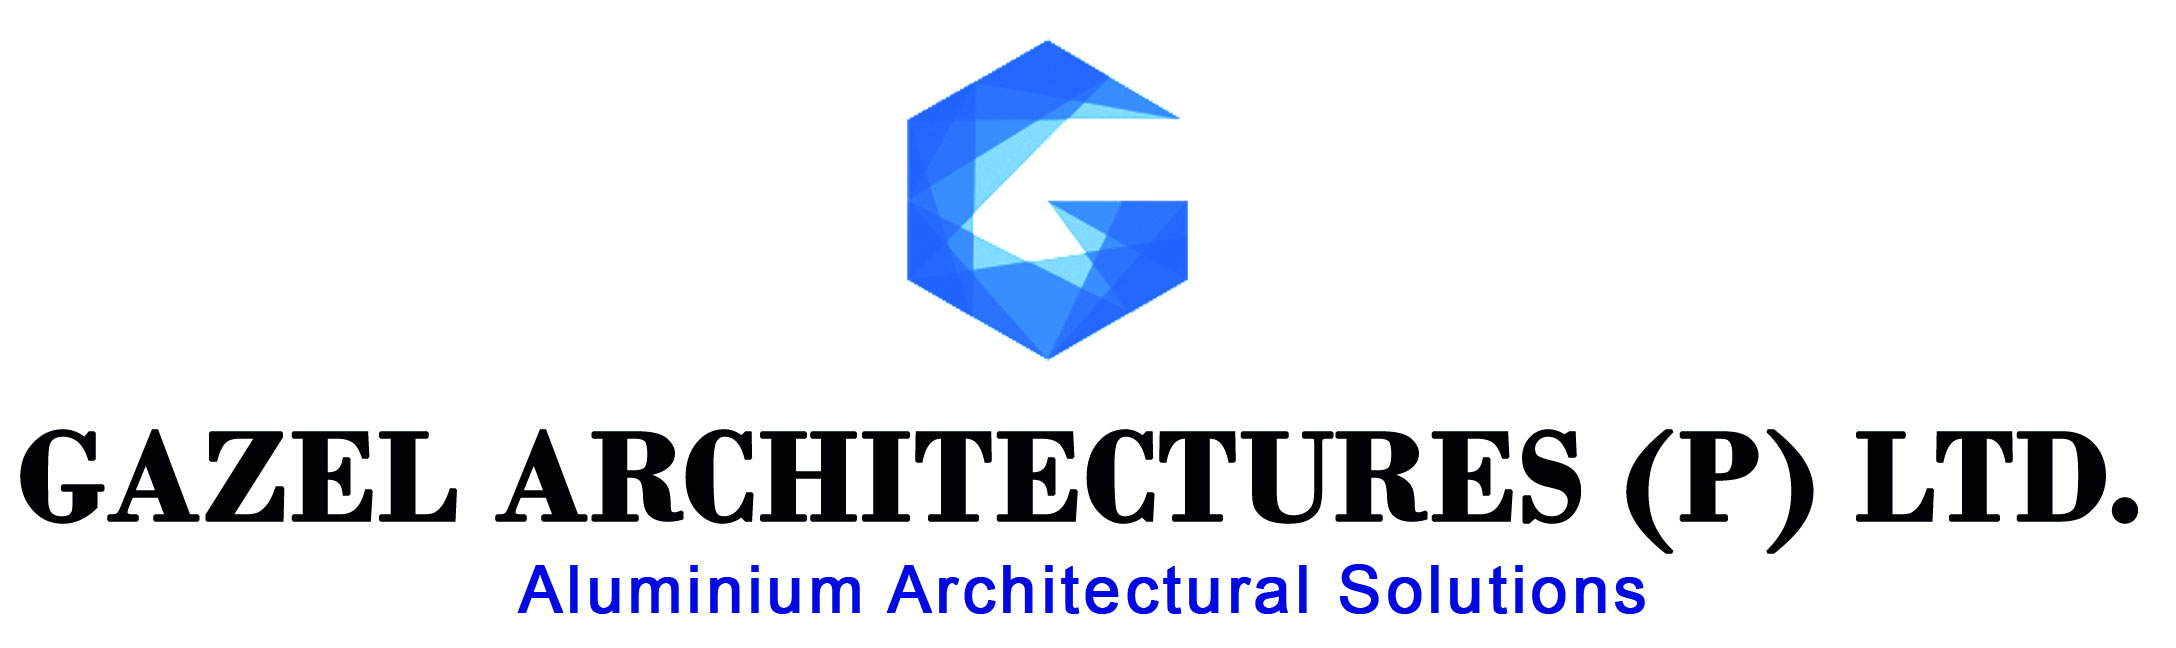 Gazel Architectures Pvt Ltd